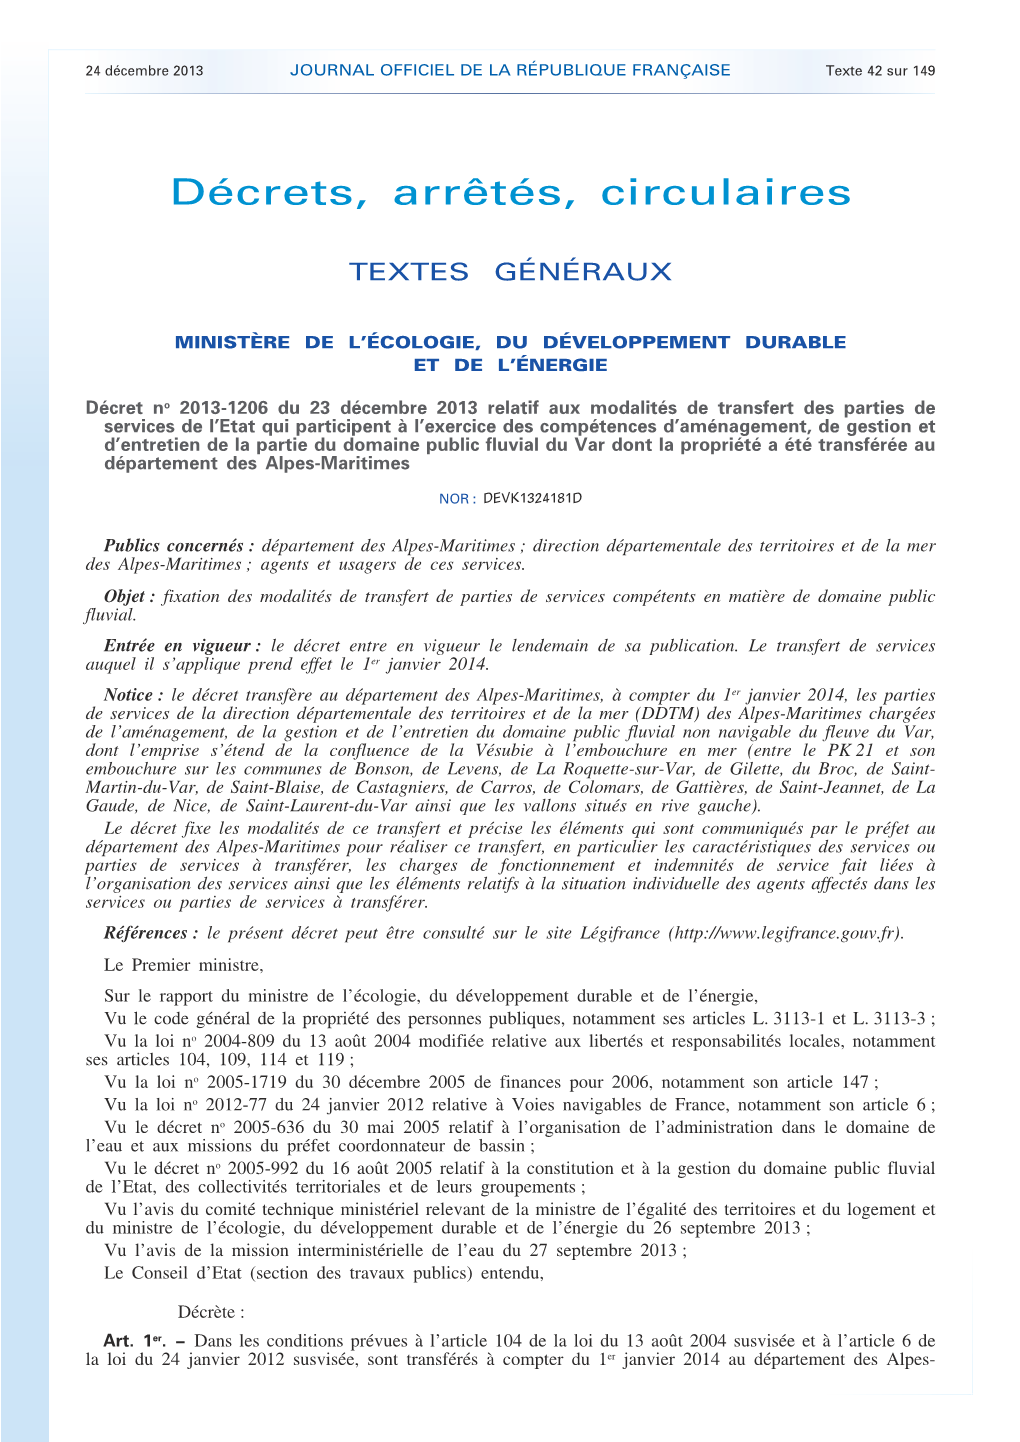 JOURNAL OFFICIEL DE LA RÉPUBLIQUE FRANÇAISE Texte 42 Sur 149